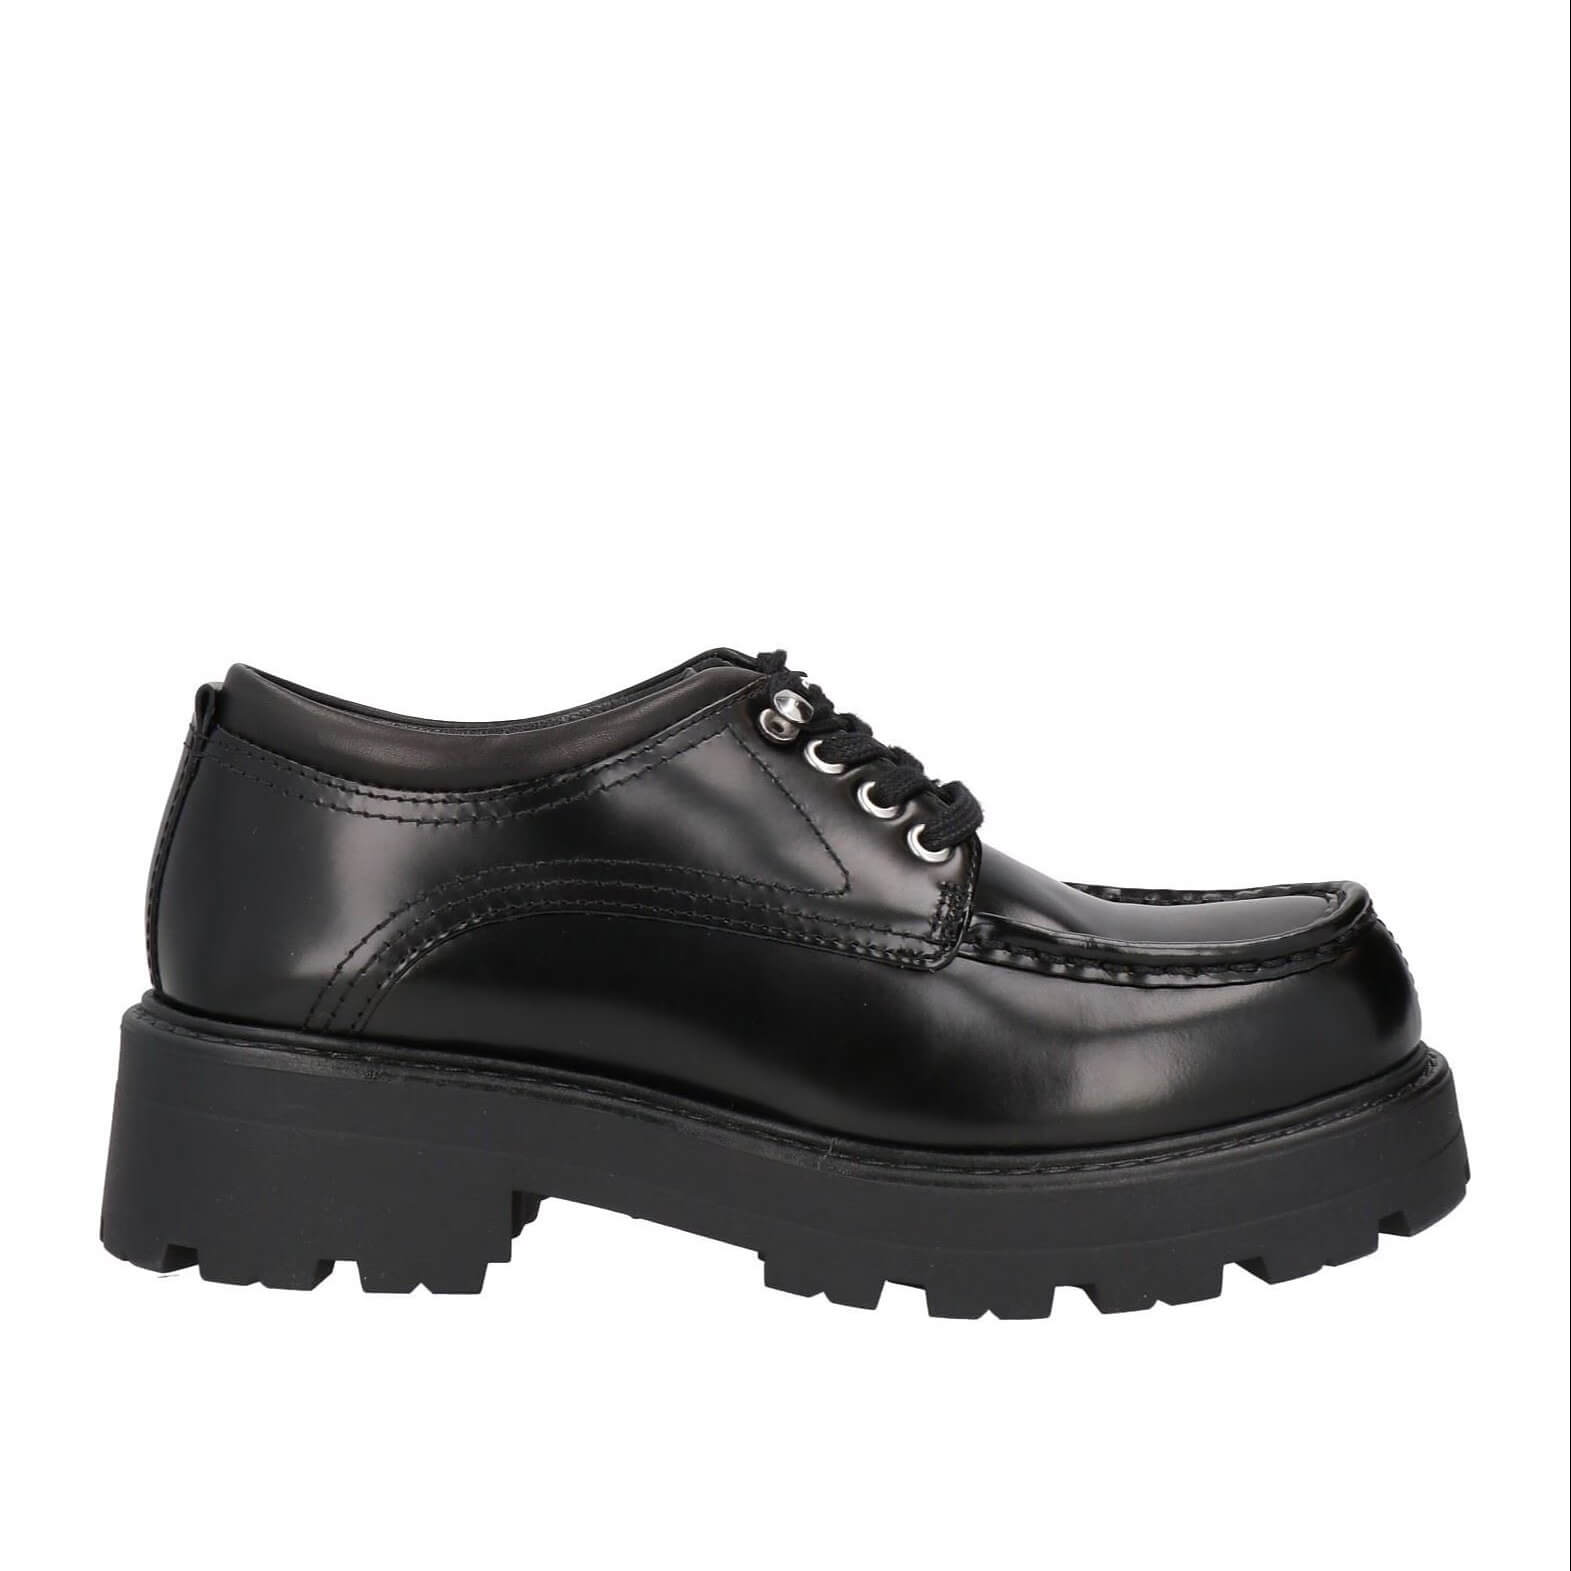 Туфли Vagabond Shoemakers Laced, черный ботинки женские из натуральной кожи на толстой рельефной подошве с невысоким квадратным каблуком 2287 цвет коричневый размер 40